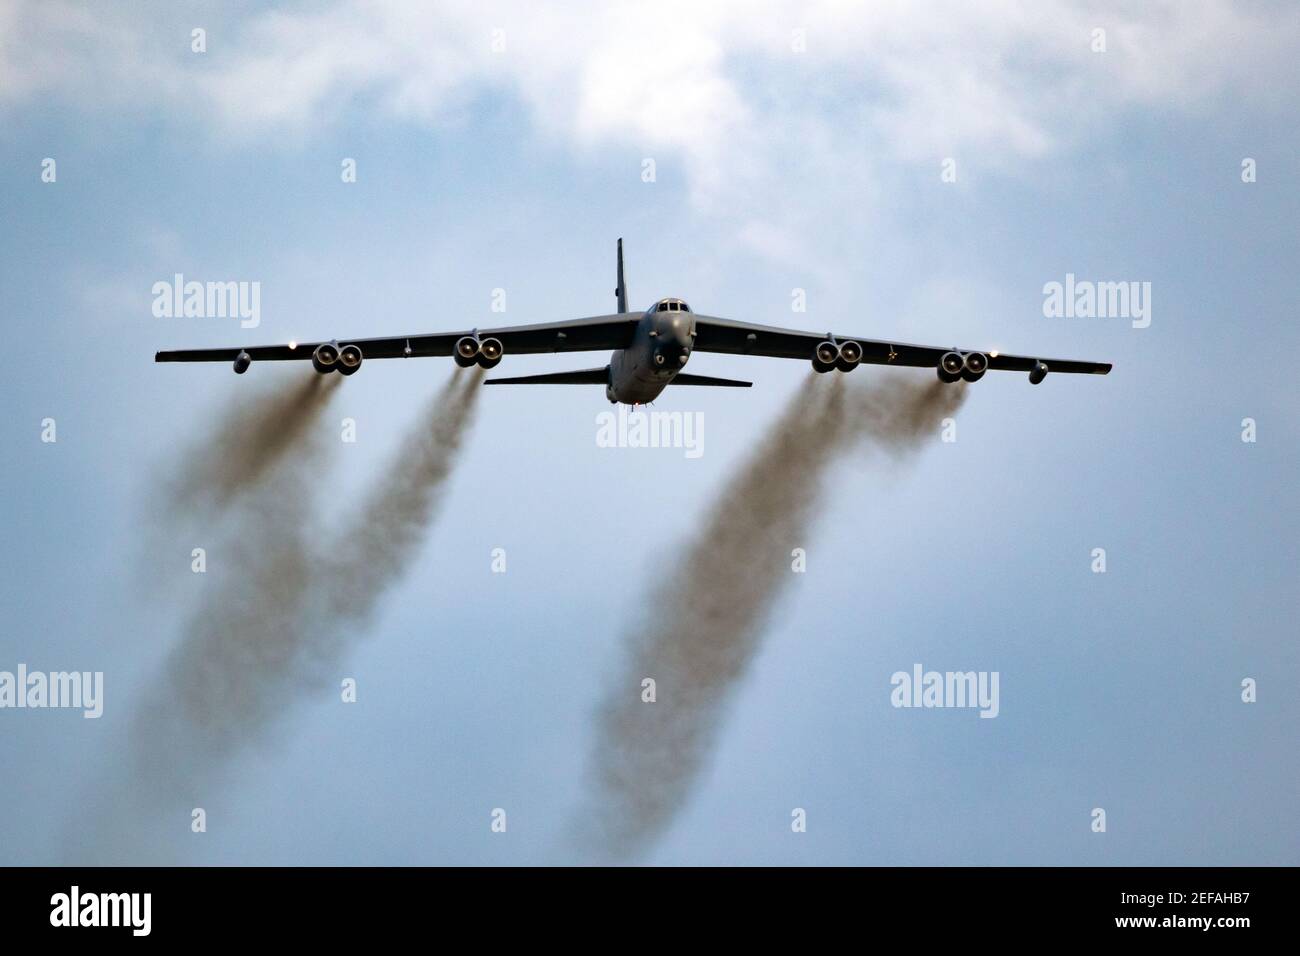 BOMBARDIER B-52 Stratoforteresse BOEING DE LA US Air Force effectuant un passe-bas au salon aérien de Sanice Sunset. Belgique - 13 septembre 2019 Banque D'Images